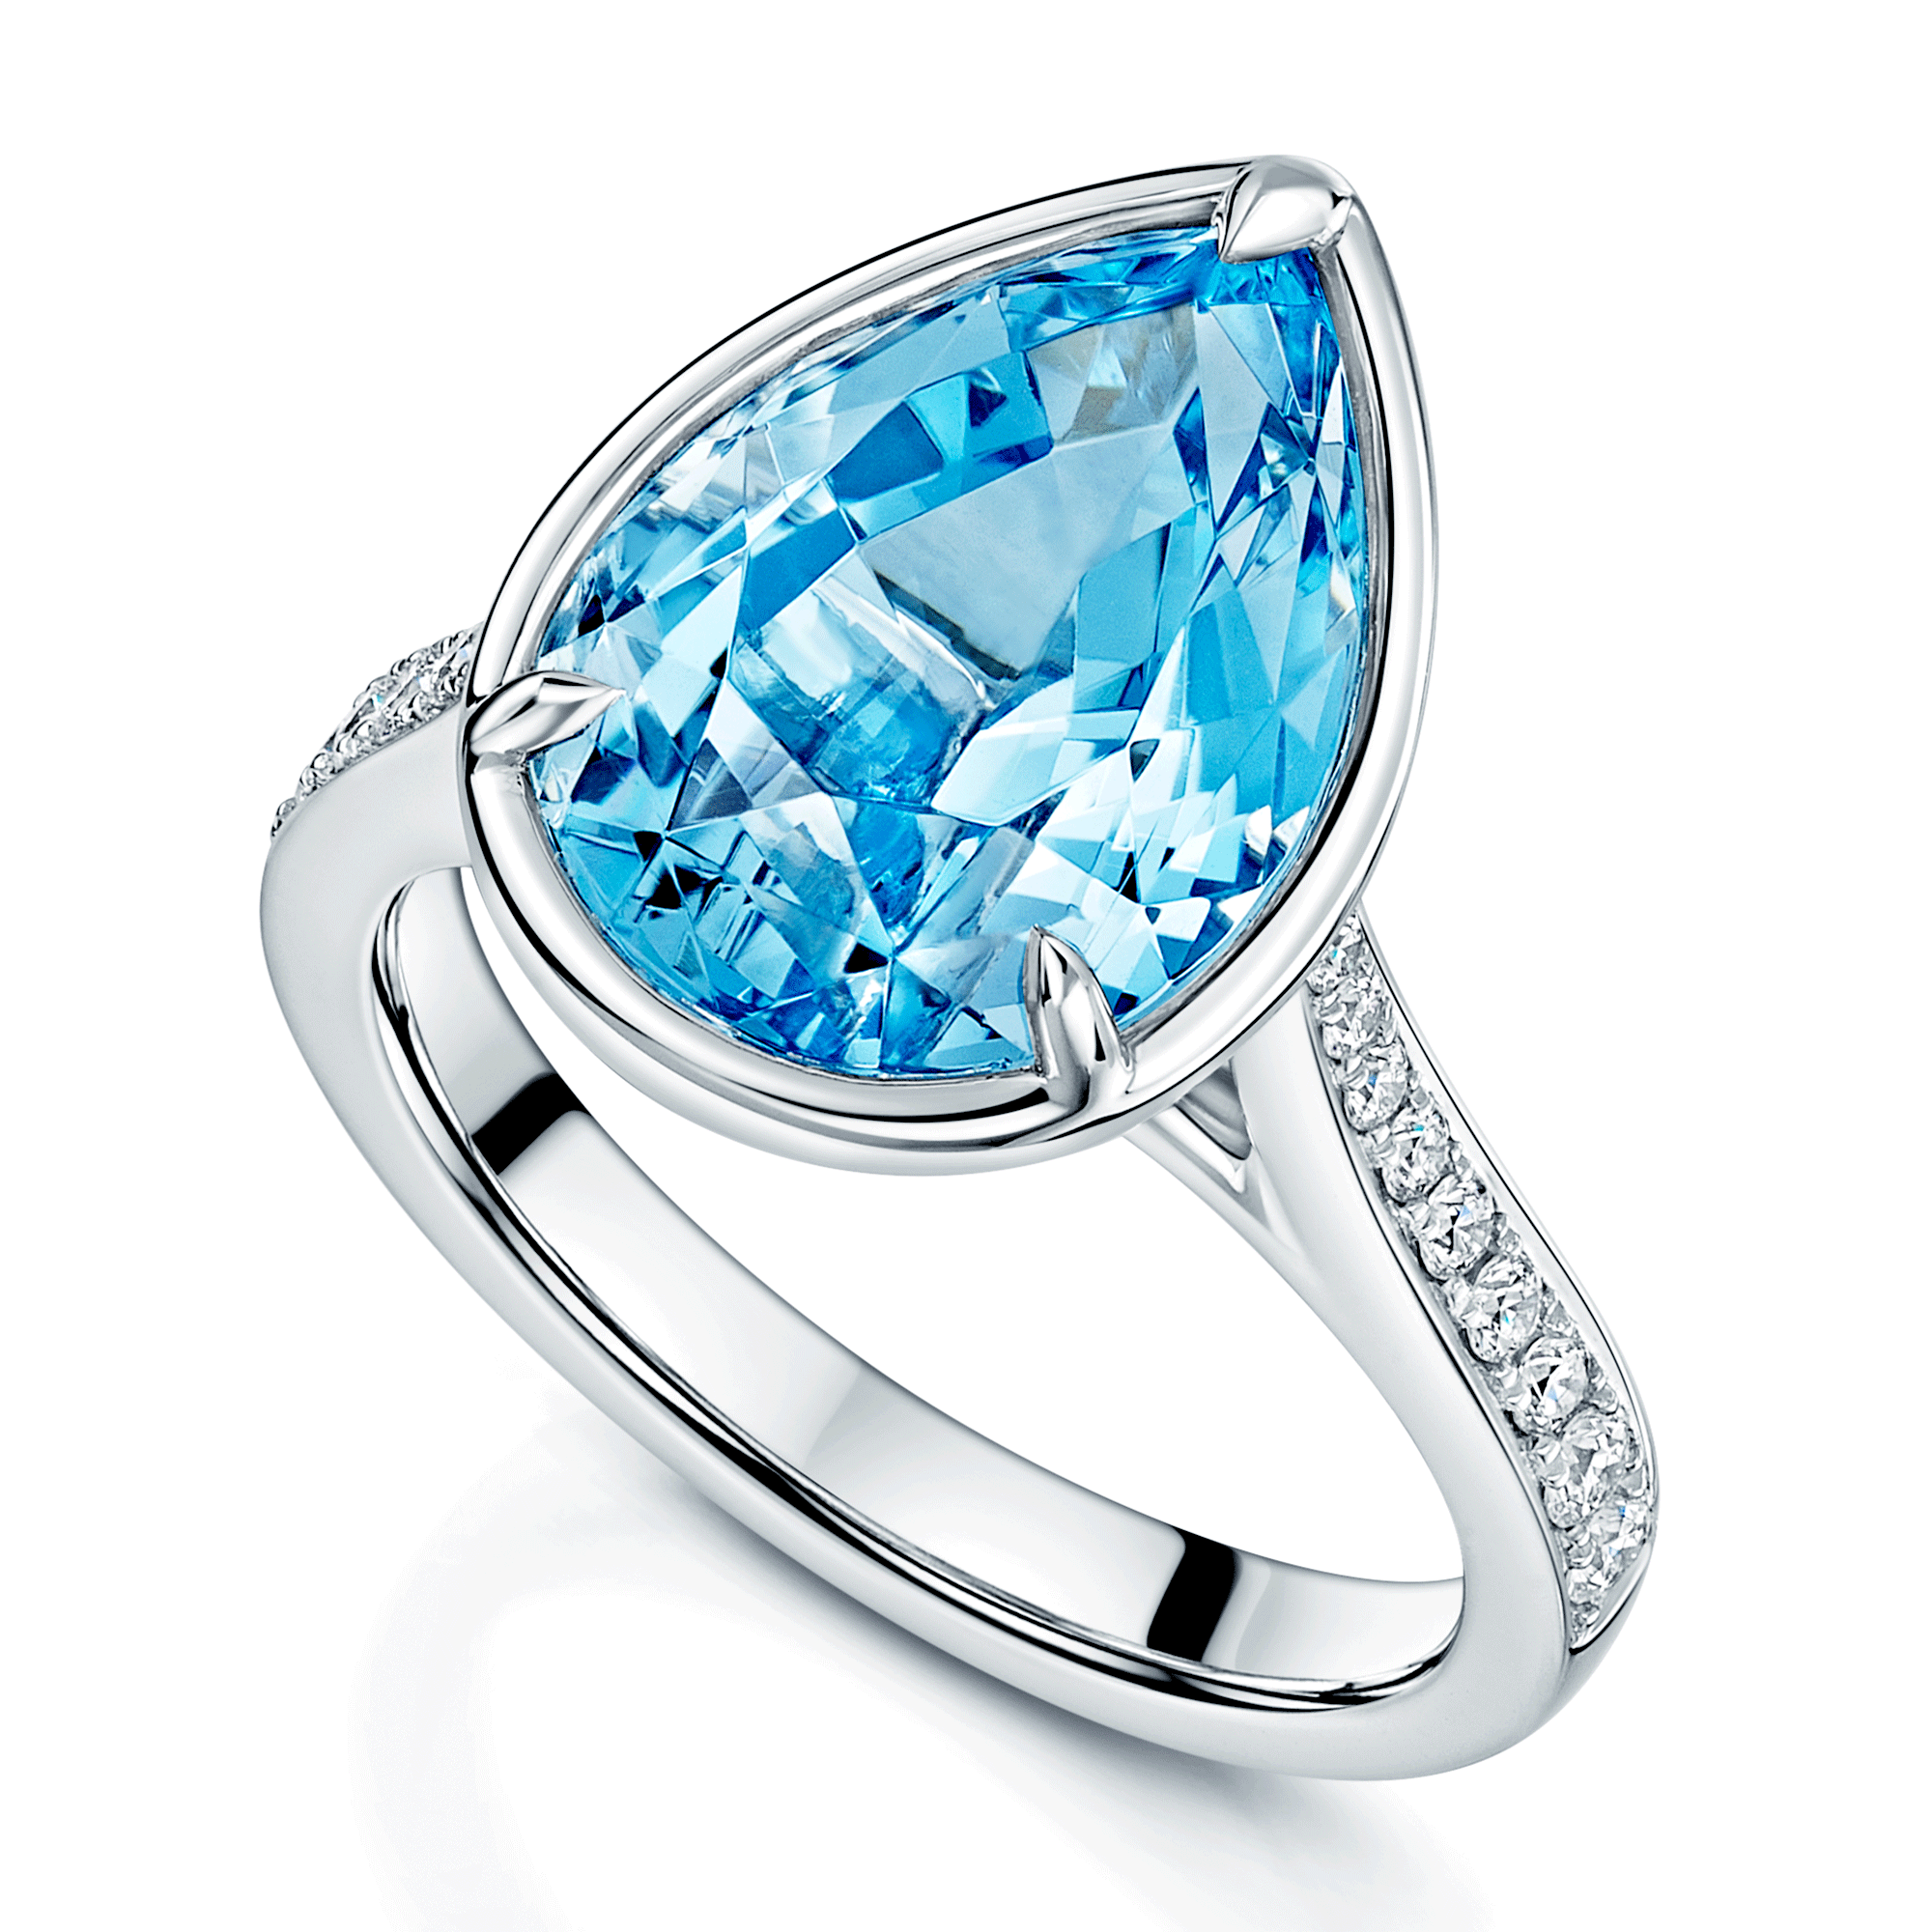 Platinum Pear Cut Aquamarine Ring With Diamond Set Shoulders